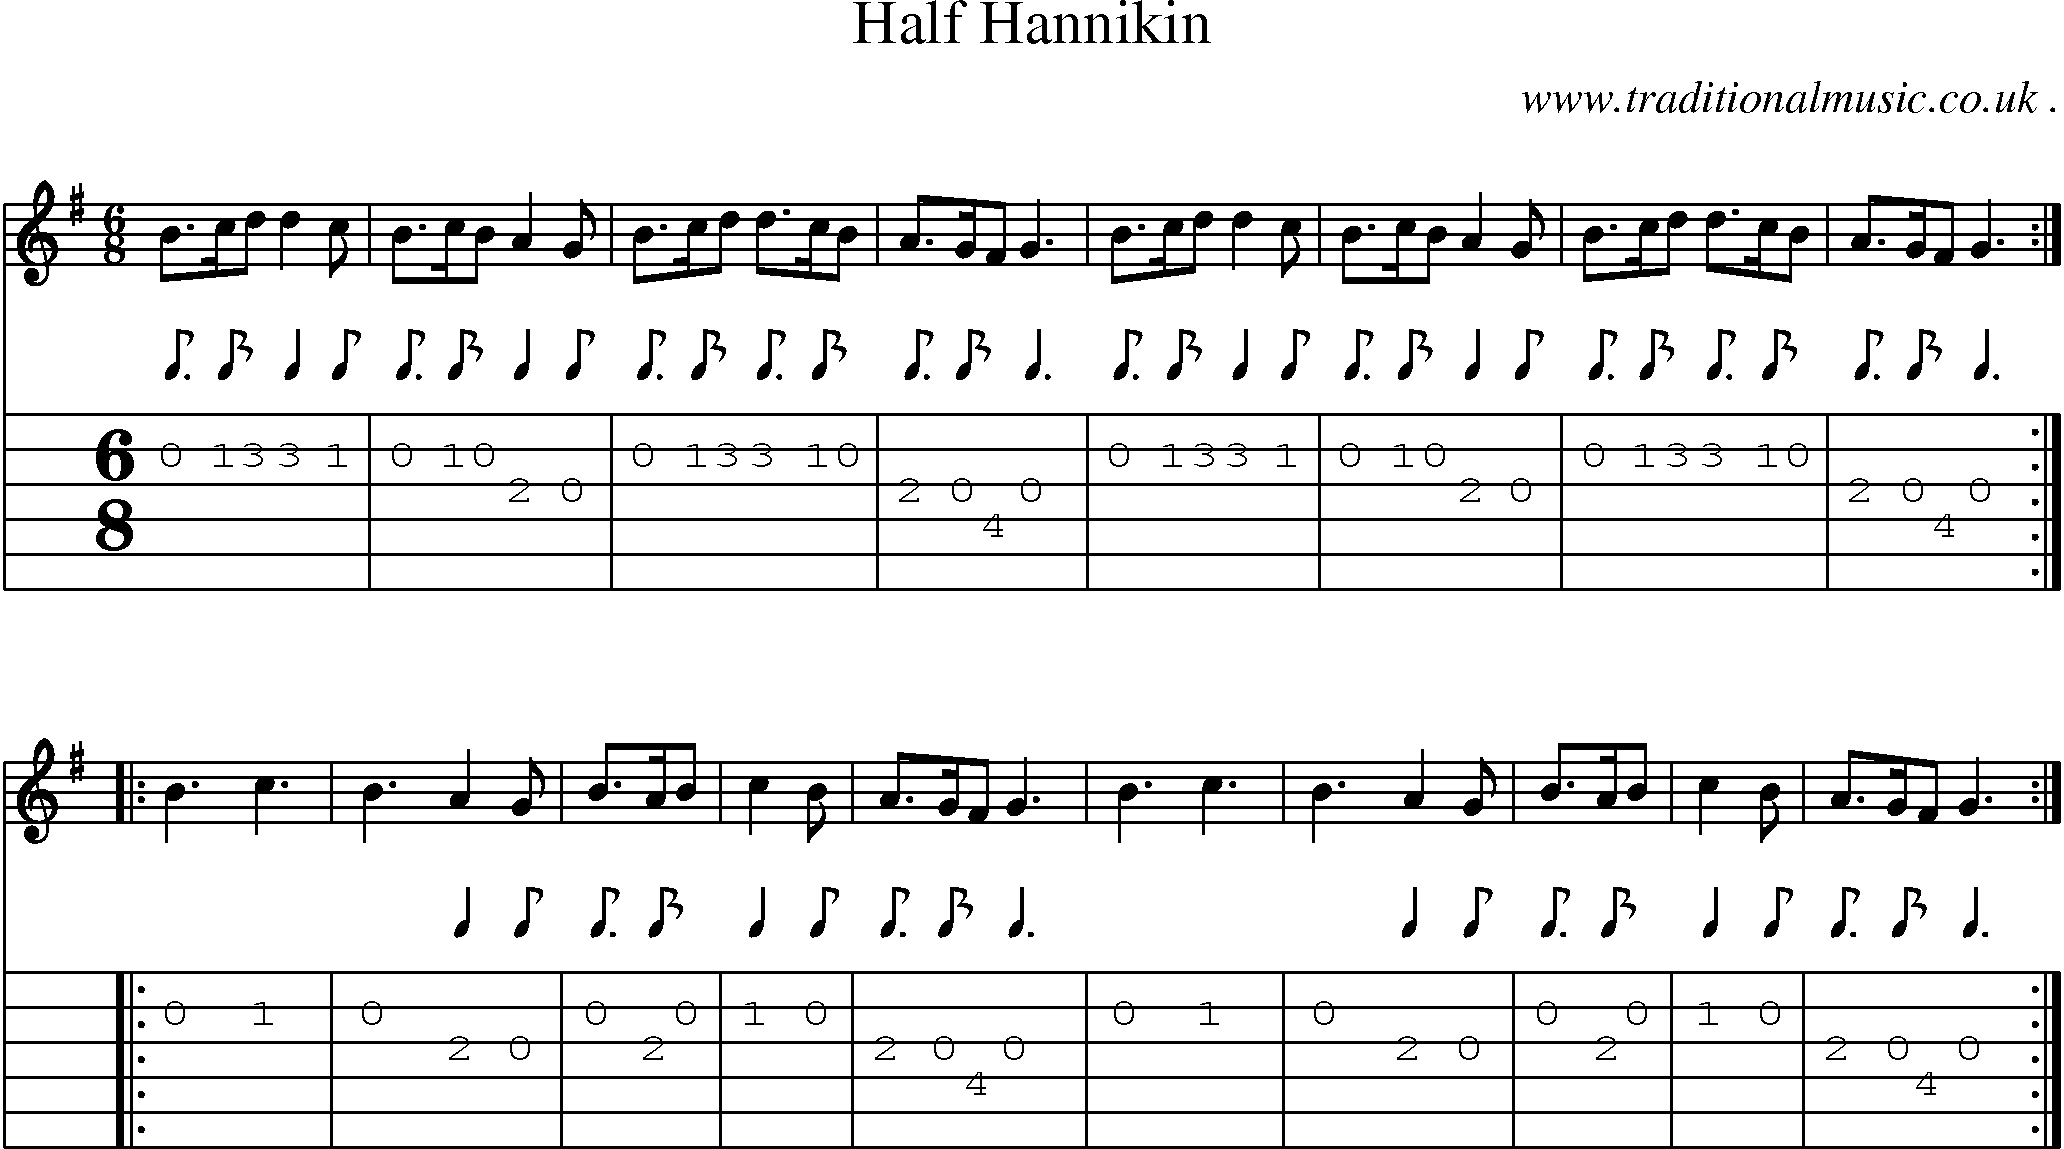 Sheet-Music and Guitar Tabs for Half Hannikin